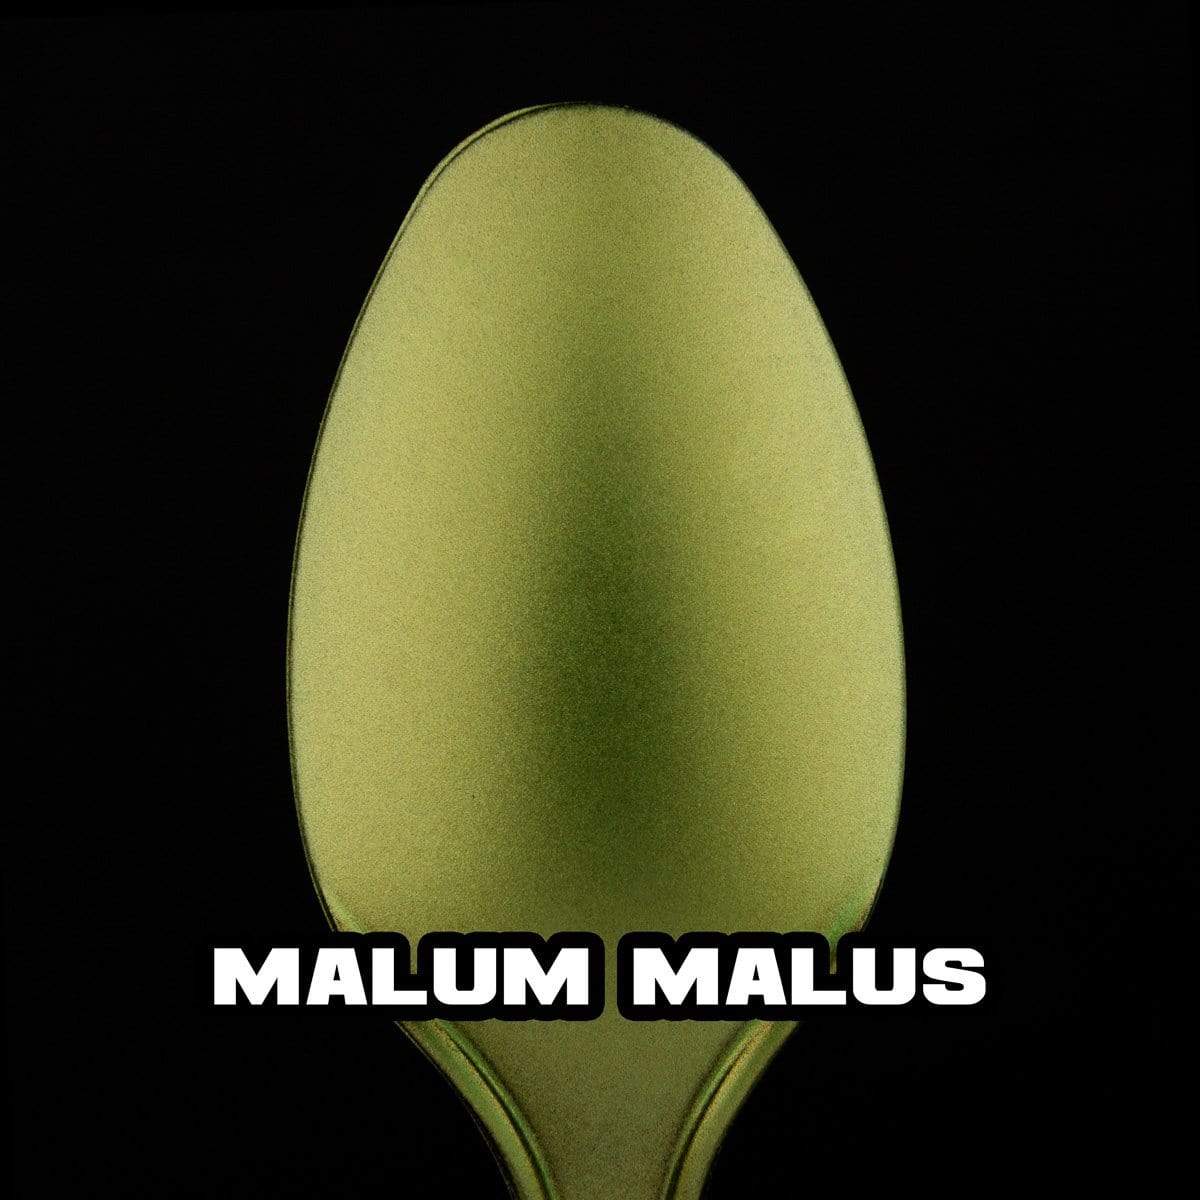 Malum Malus Metallic Acrylic Paint Metallic Turbo Dork Exit 23 Games Malum Malus Metallic Acrylic Paint